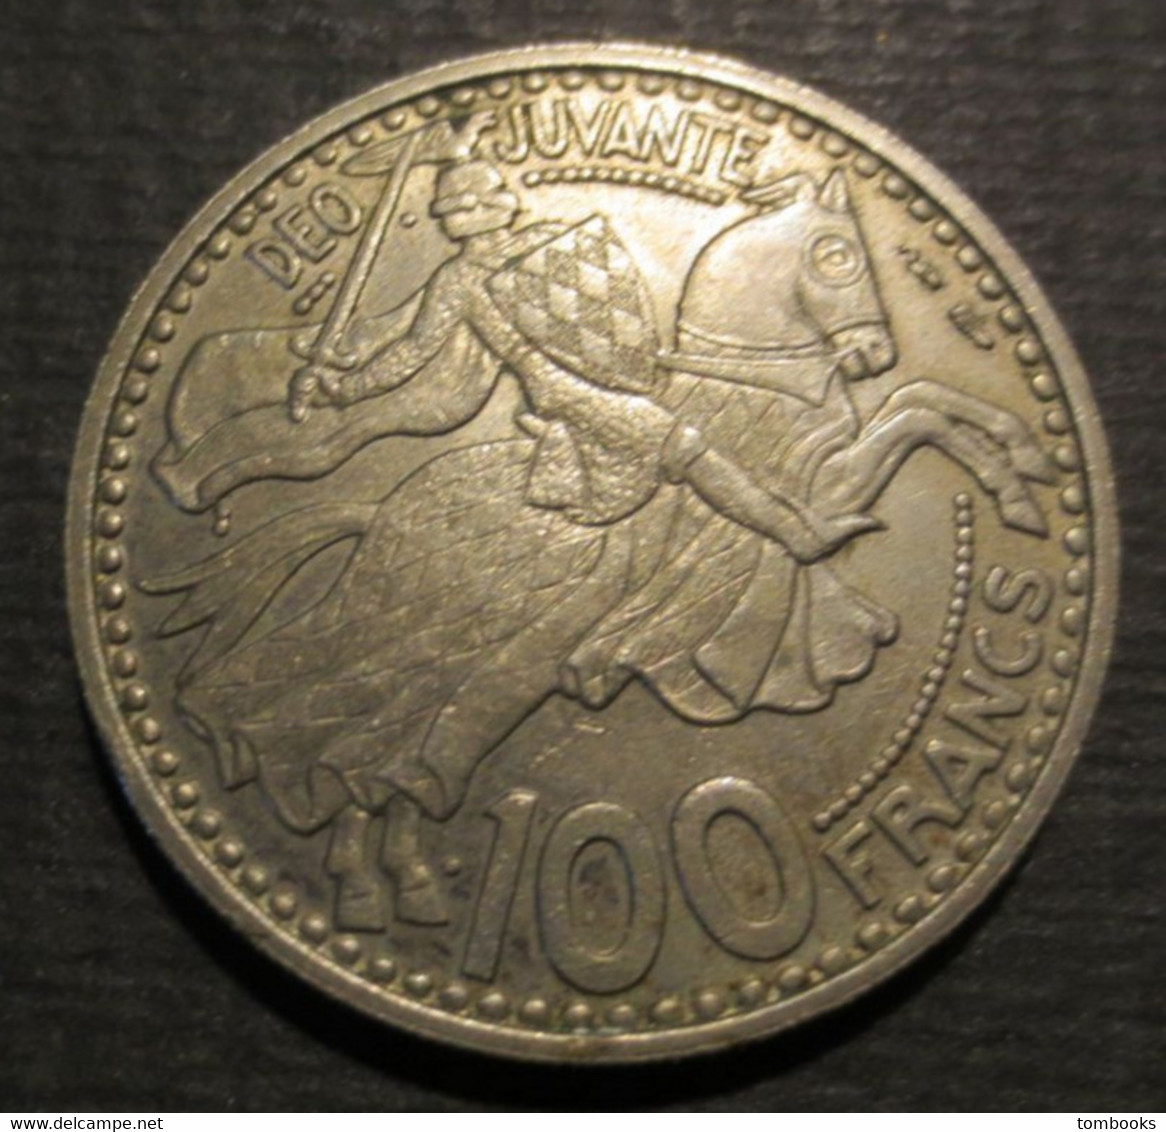 Monaco - Monnaie Ancienne - 100 Francs - Copper Nickel - Rainier III - Prince De Monaco - 1950 - - 1949-1956 Franchi Antichi